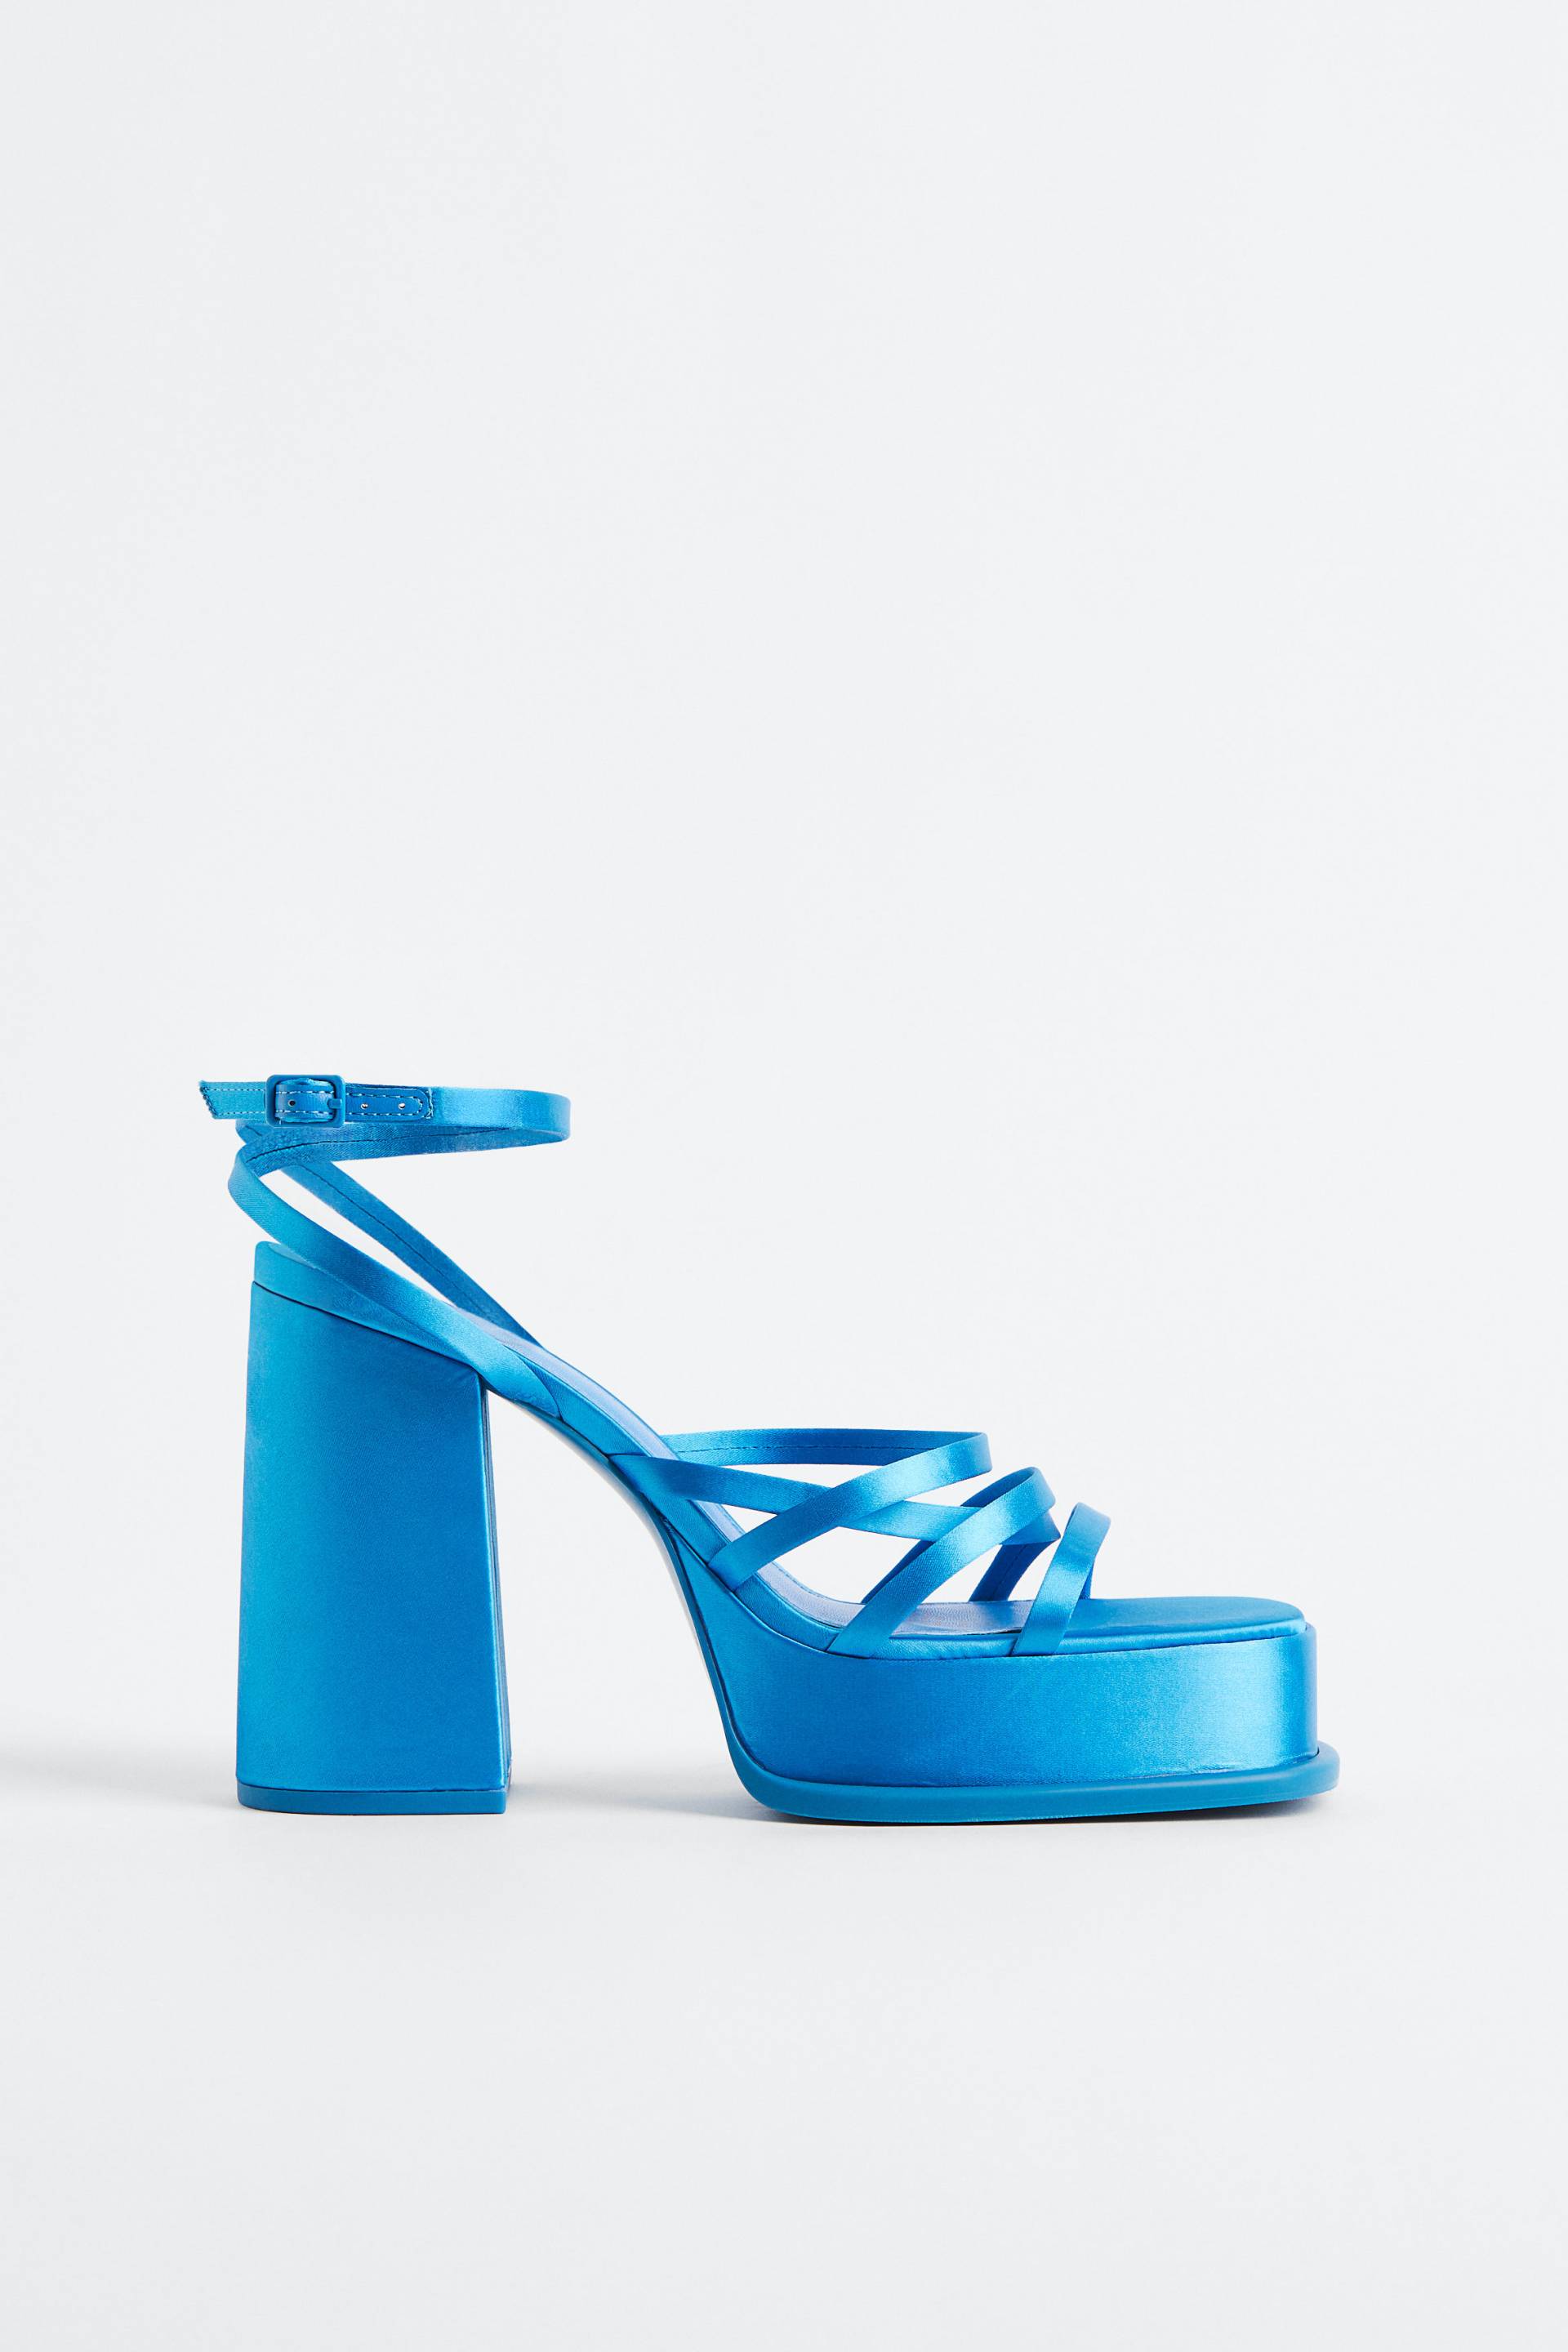 H&M Plateau-Sandalen Blau, Heels in Größe 39. Farbe: Blue von H&M